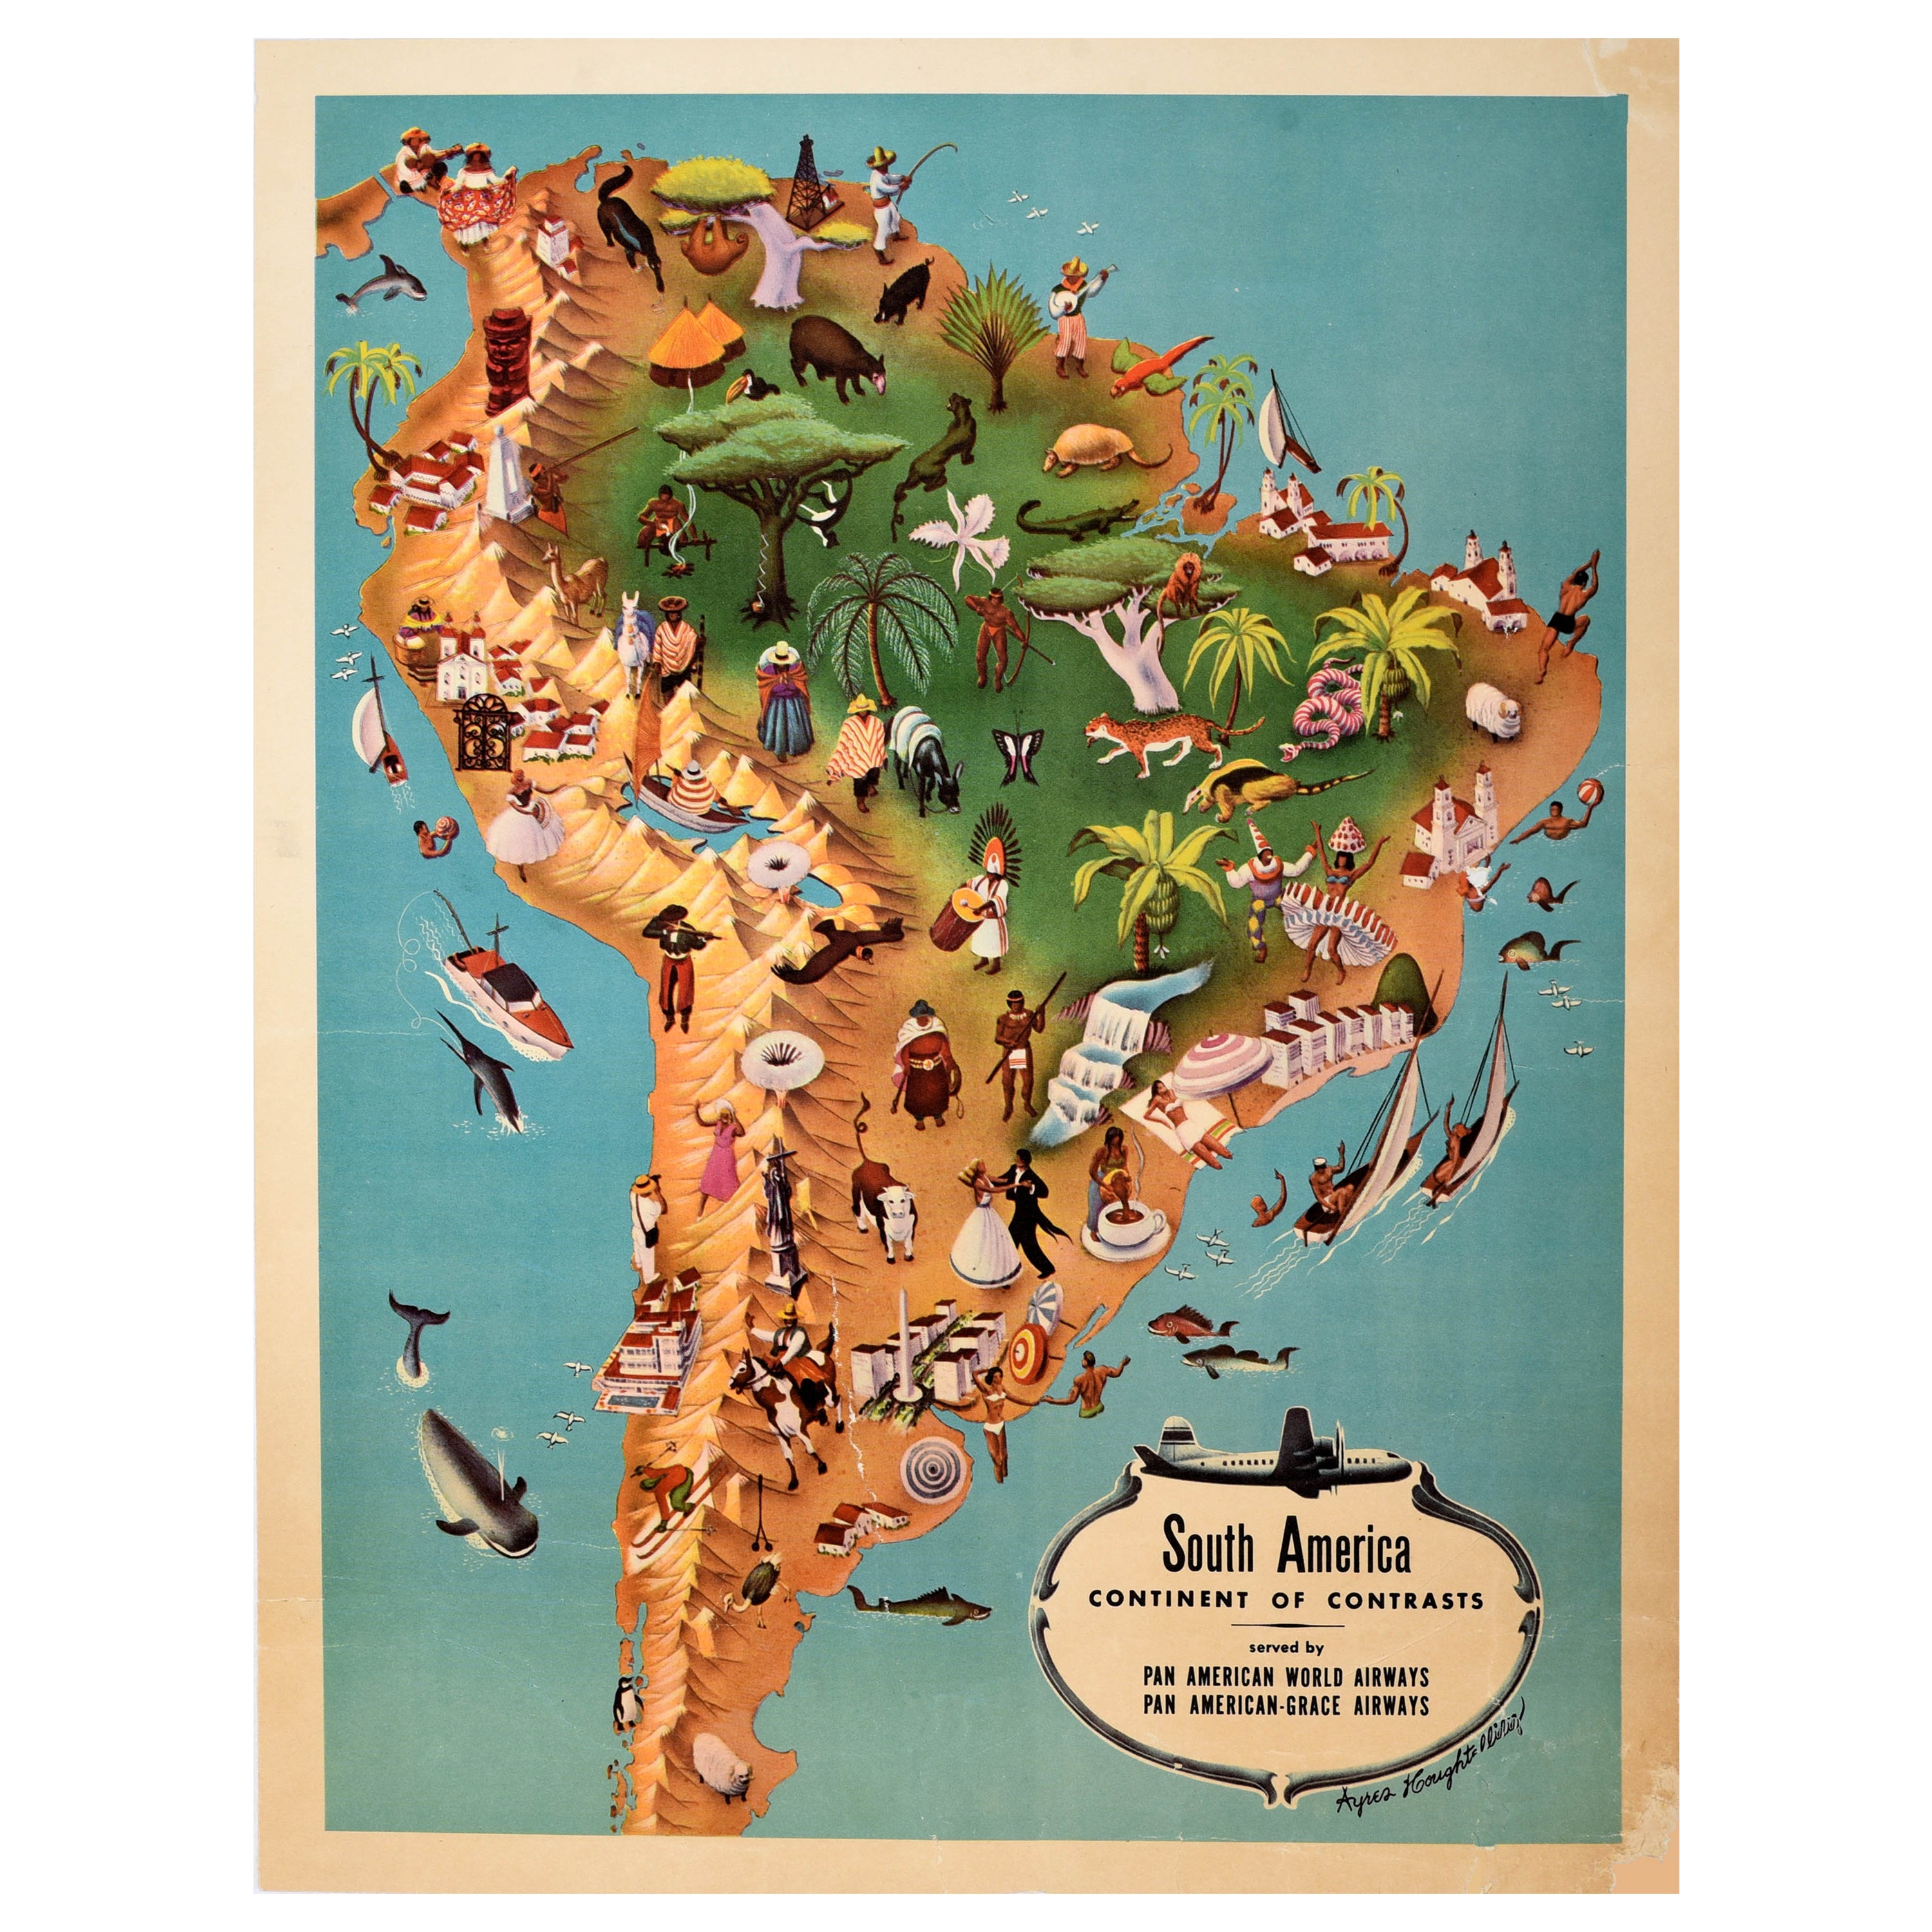 Affiche rétro originale d'une carte de voyage Pan Am d'Amérique du Sud, Continent des contrastes